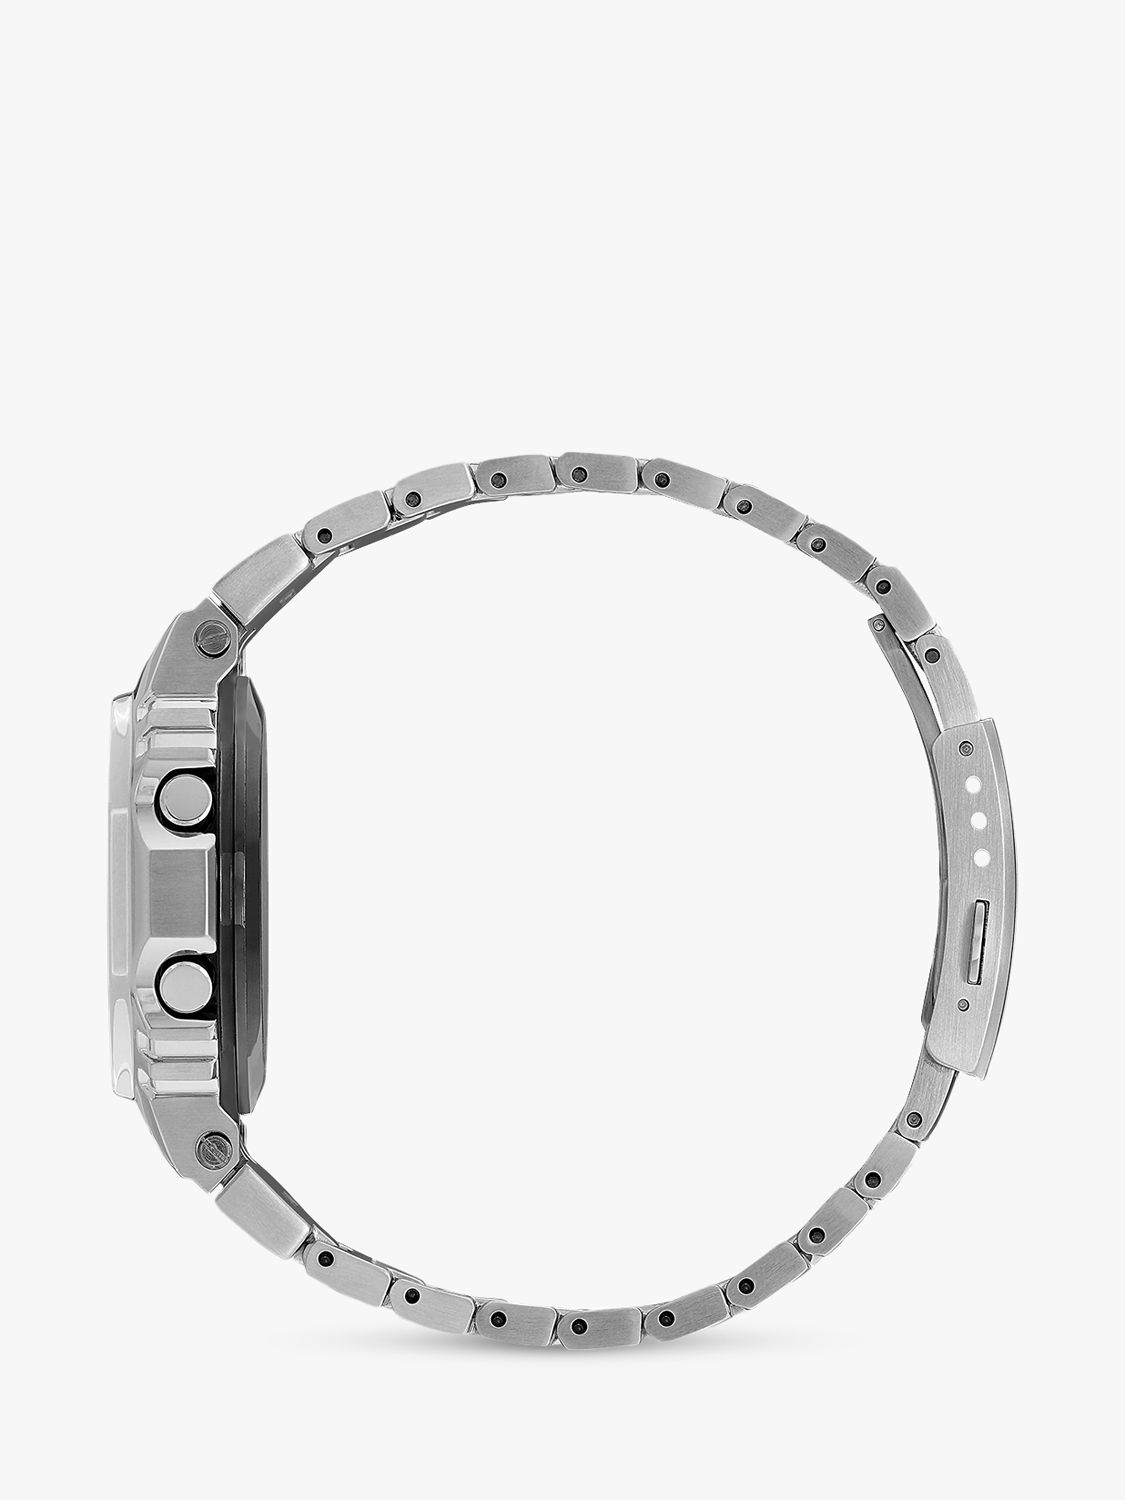 Buy G-Shock Unisex G-Shock Metal Digital Bracelet Strap Watch, Silver/Grey GMW-B5000D-1ER Online at johnlewis.com